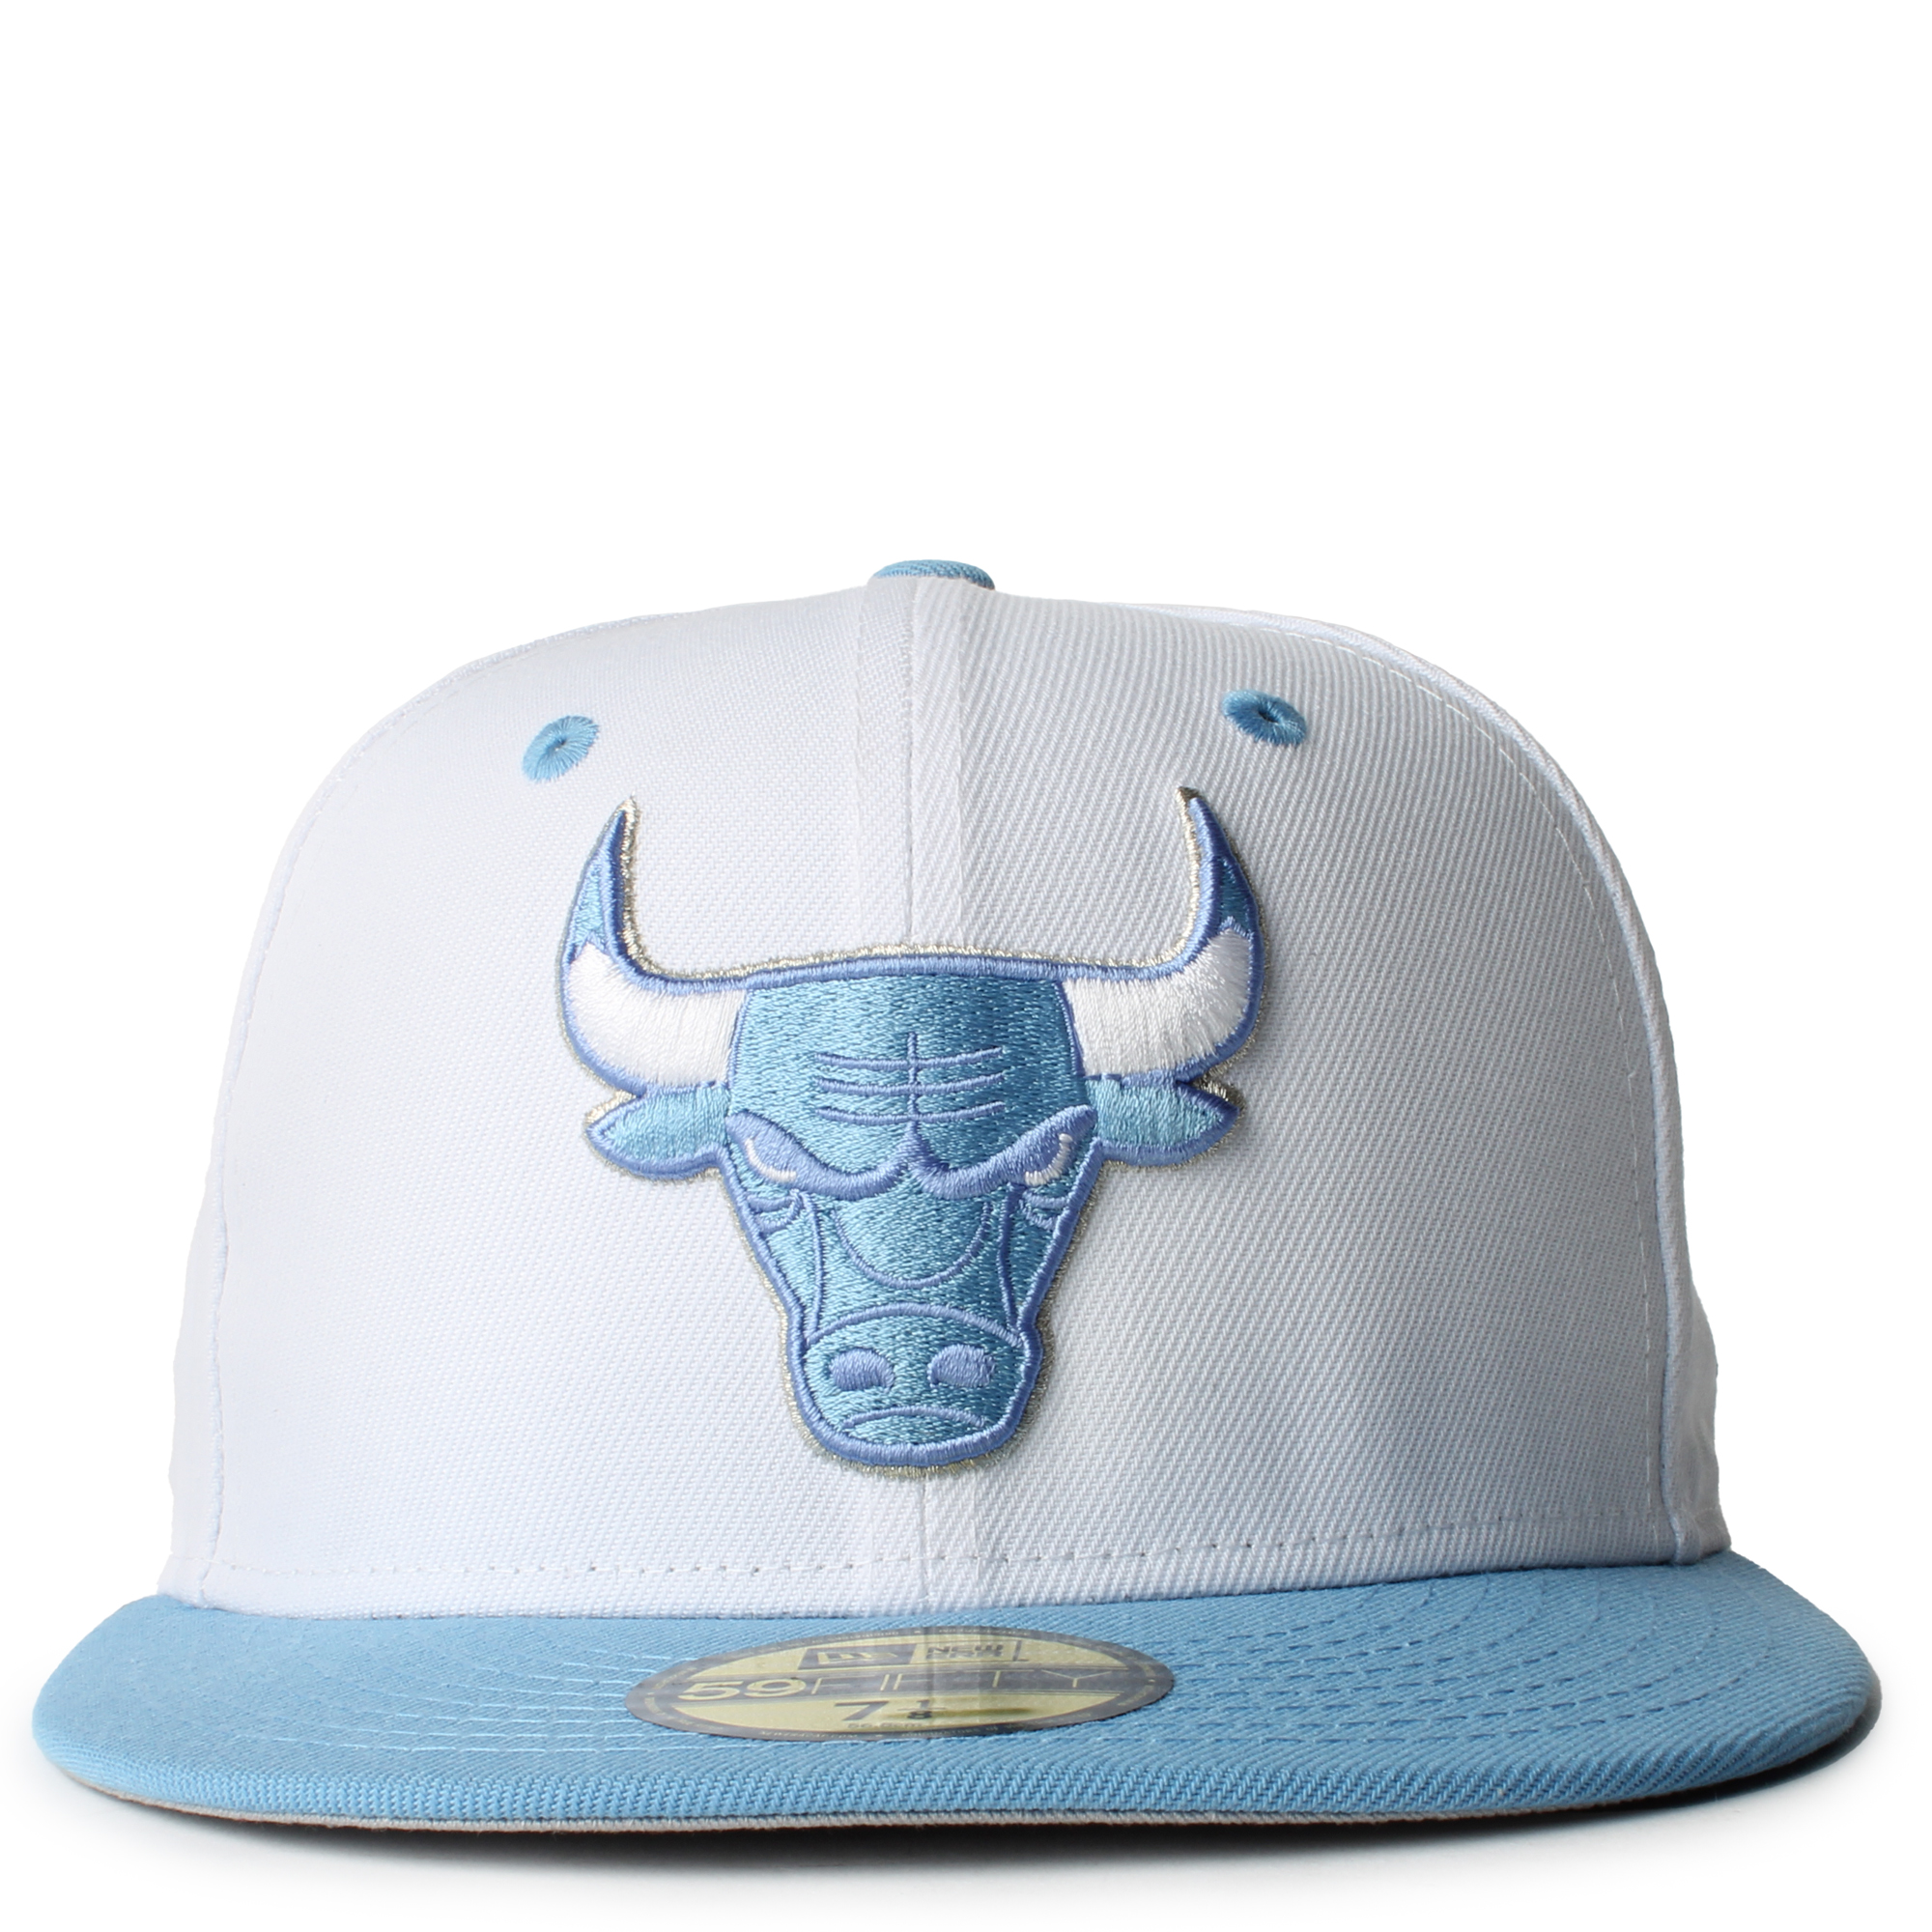 all white chicago bulls hat